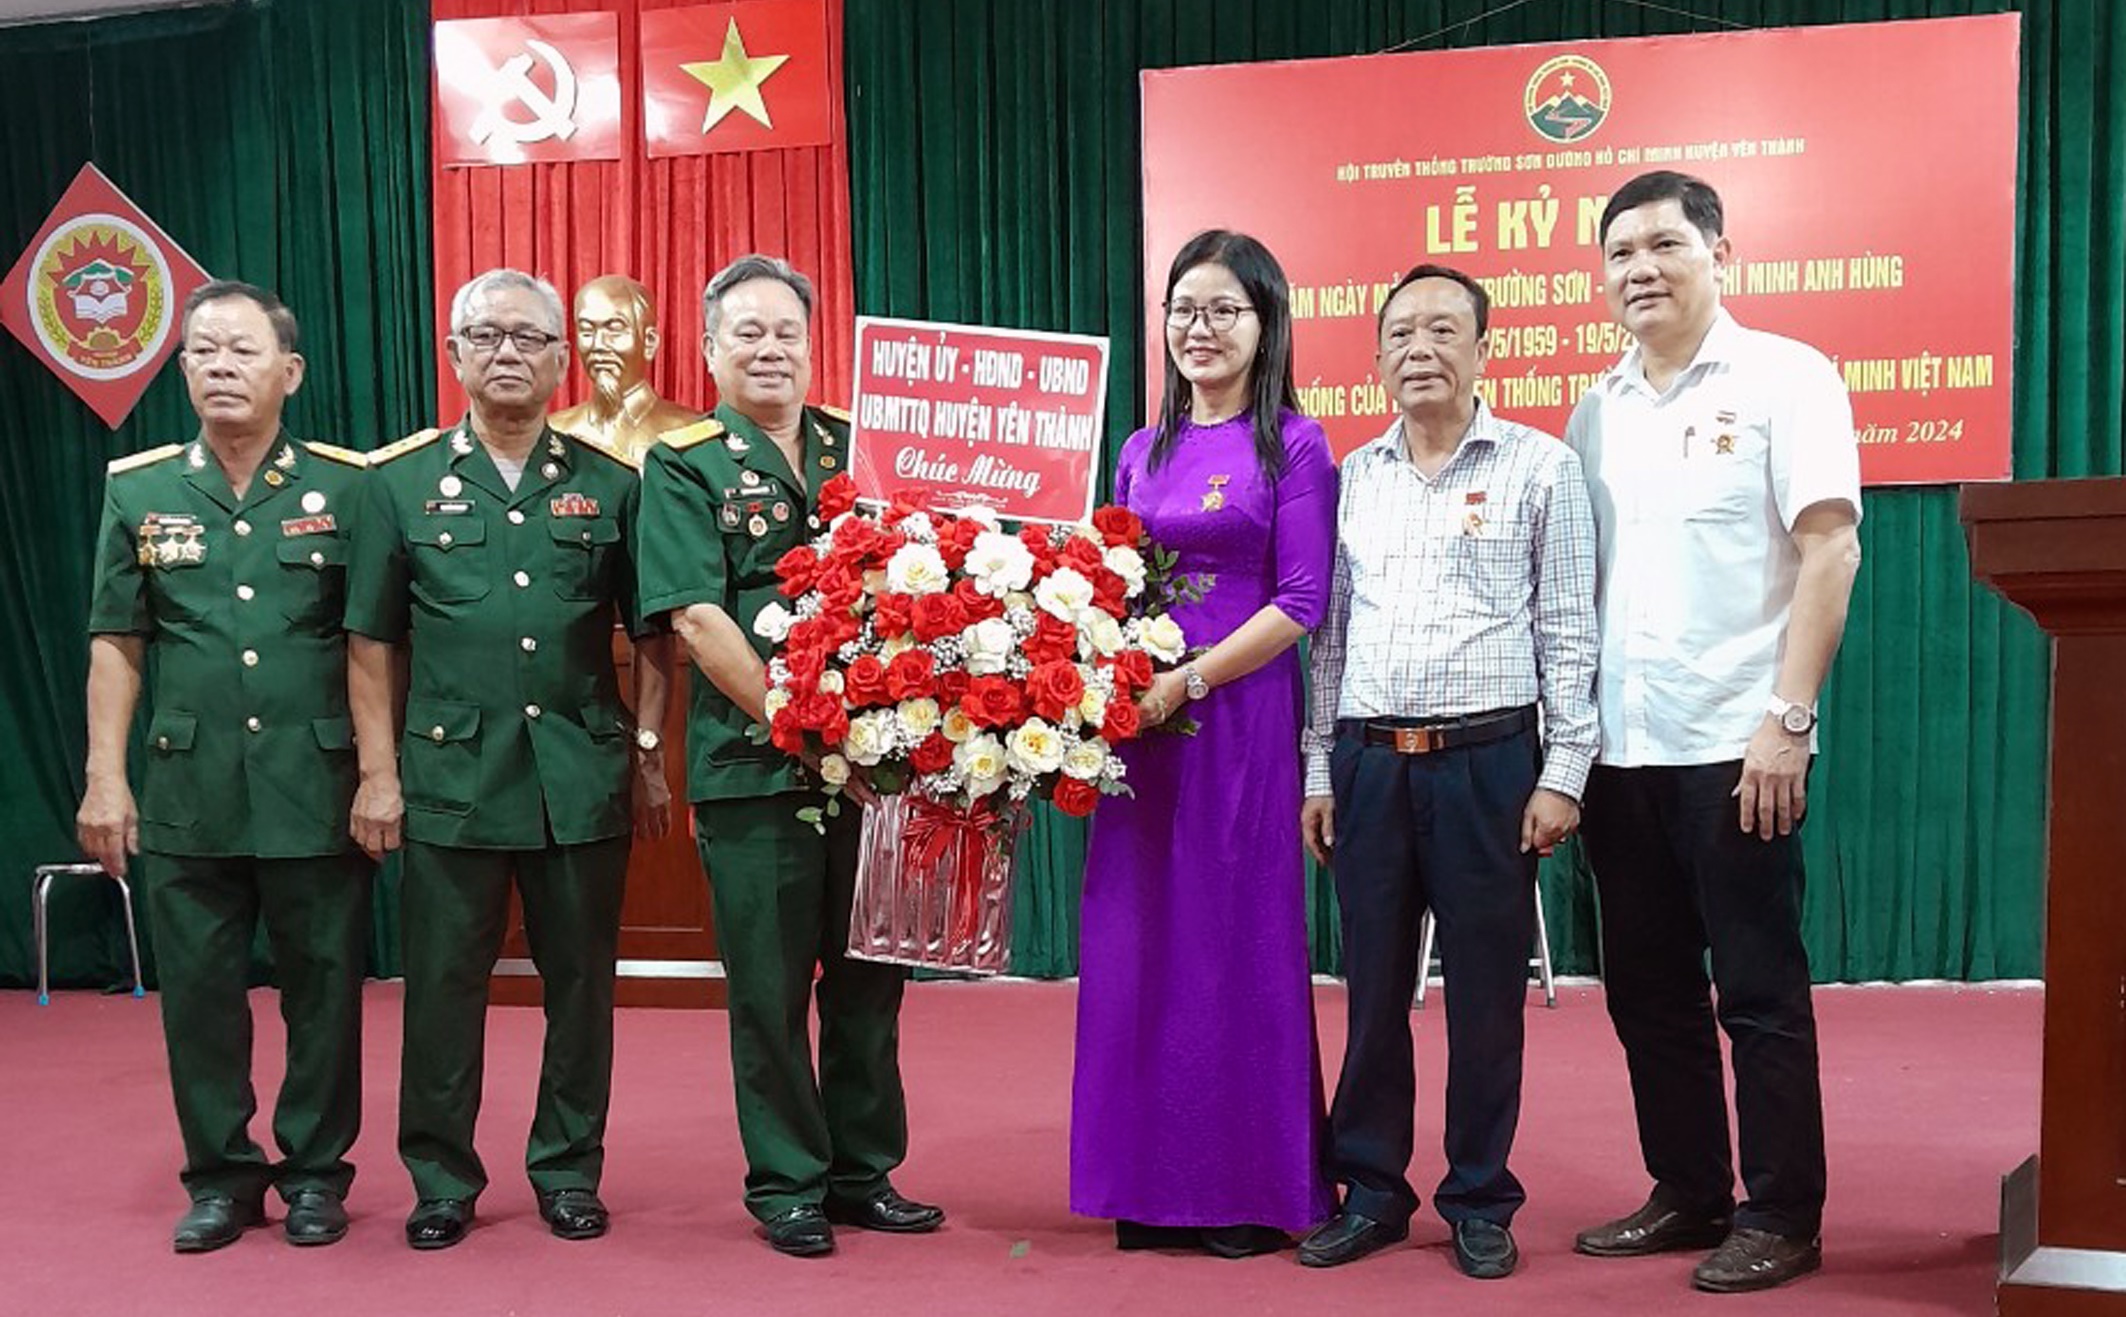 Hội TS huyện Yên Thành, Nghệ An hoạt động và kỷ niệm 65 năm Ngày truyền thống Trường Sơn anh hùng